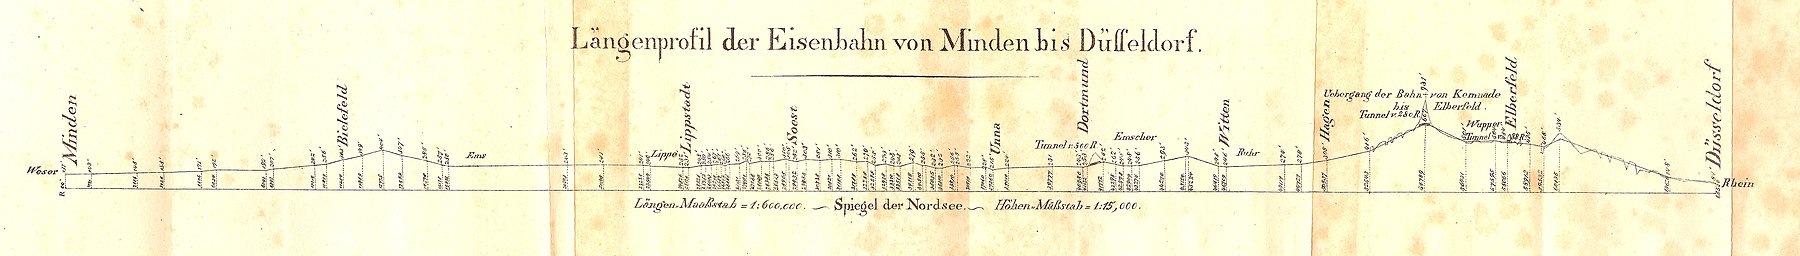 Hoogteprofiel van het afgewezen routeontwerp uit 1833 via Elberfeld, Barmen, Hagen, Dortmund, Soest, Lippstadt en Bielefeld